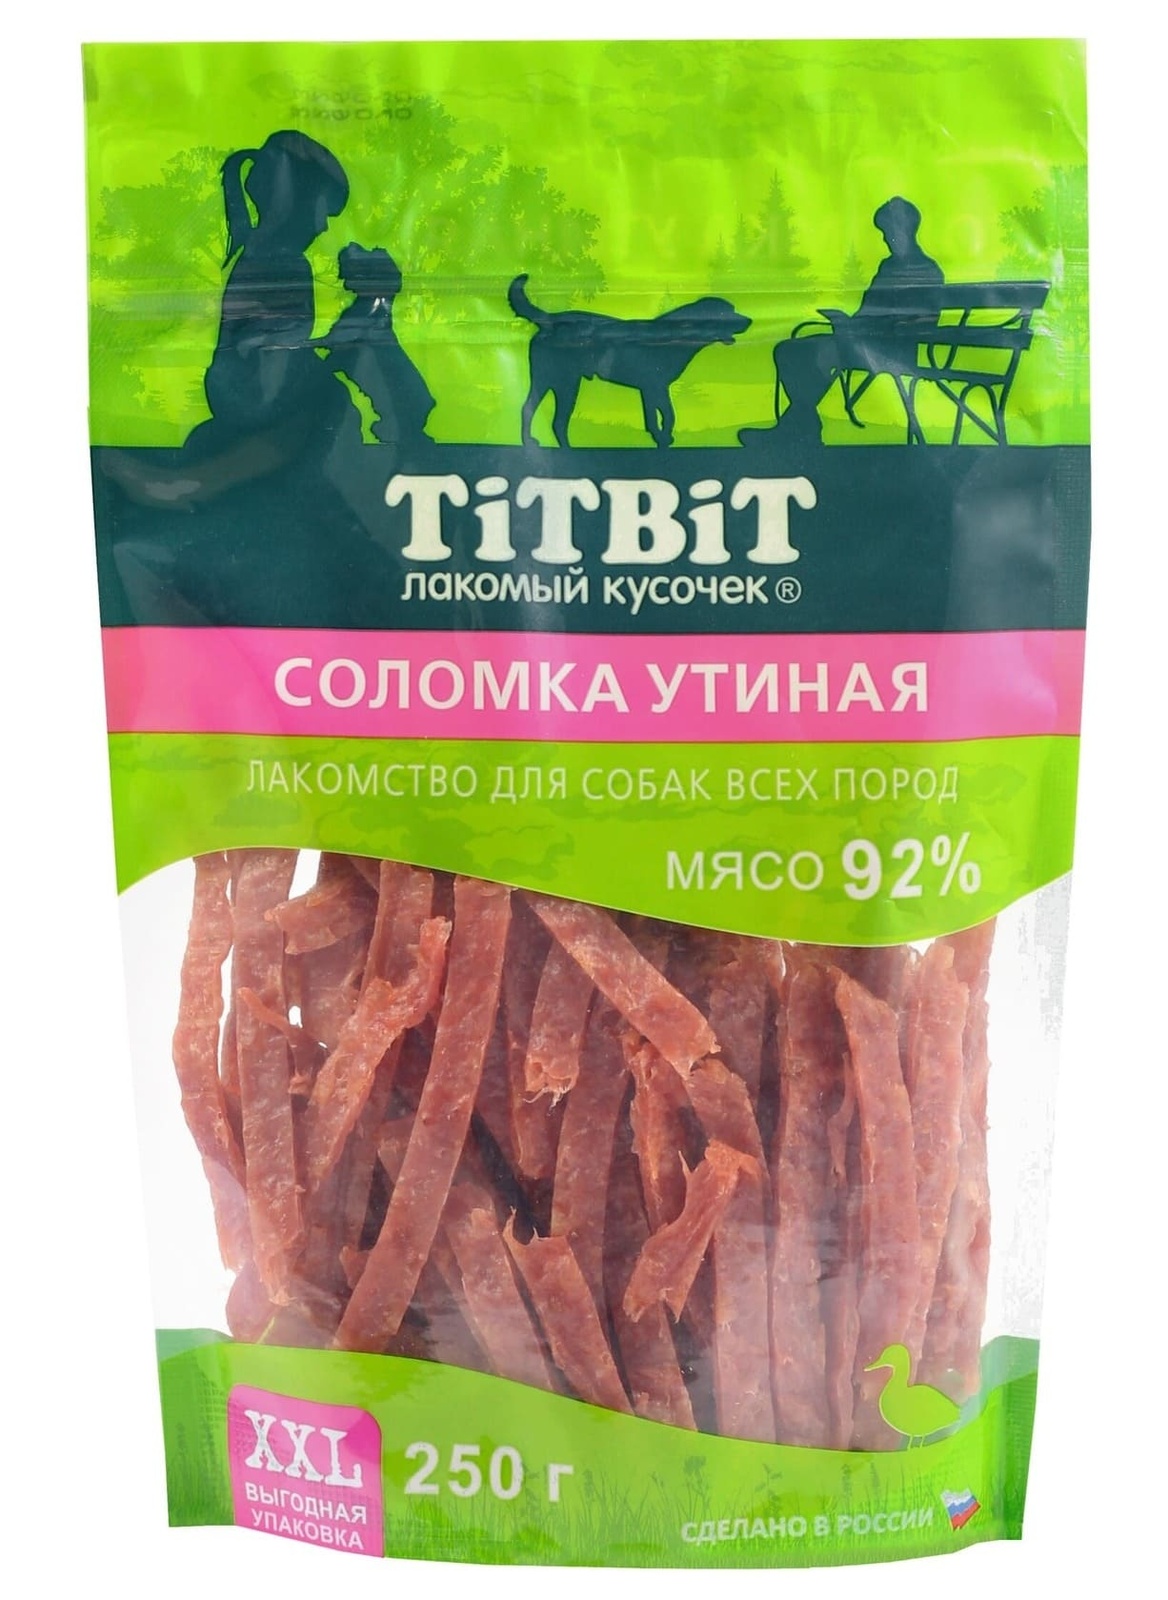 TiTBiT TiTBiT соломка утиная для собак всех пород выгодная упаковка XXL (250 г)